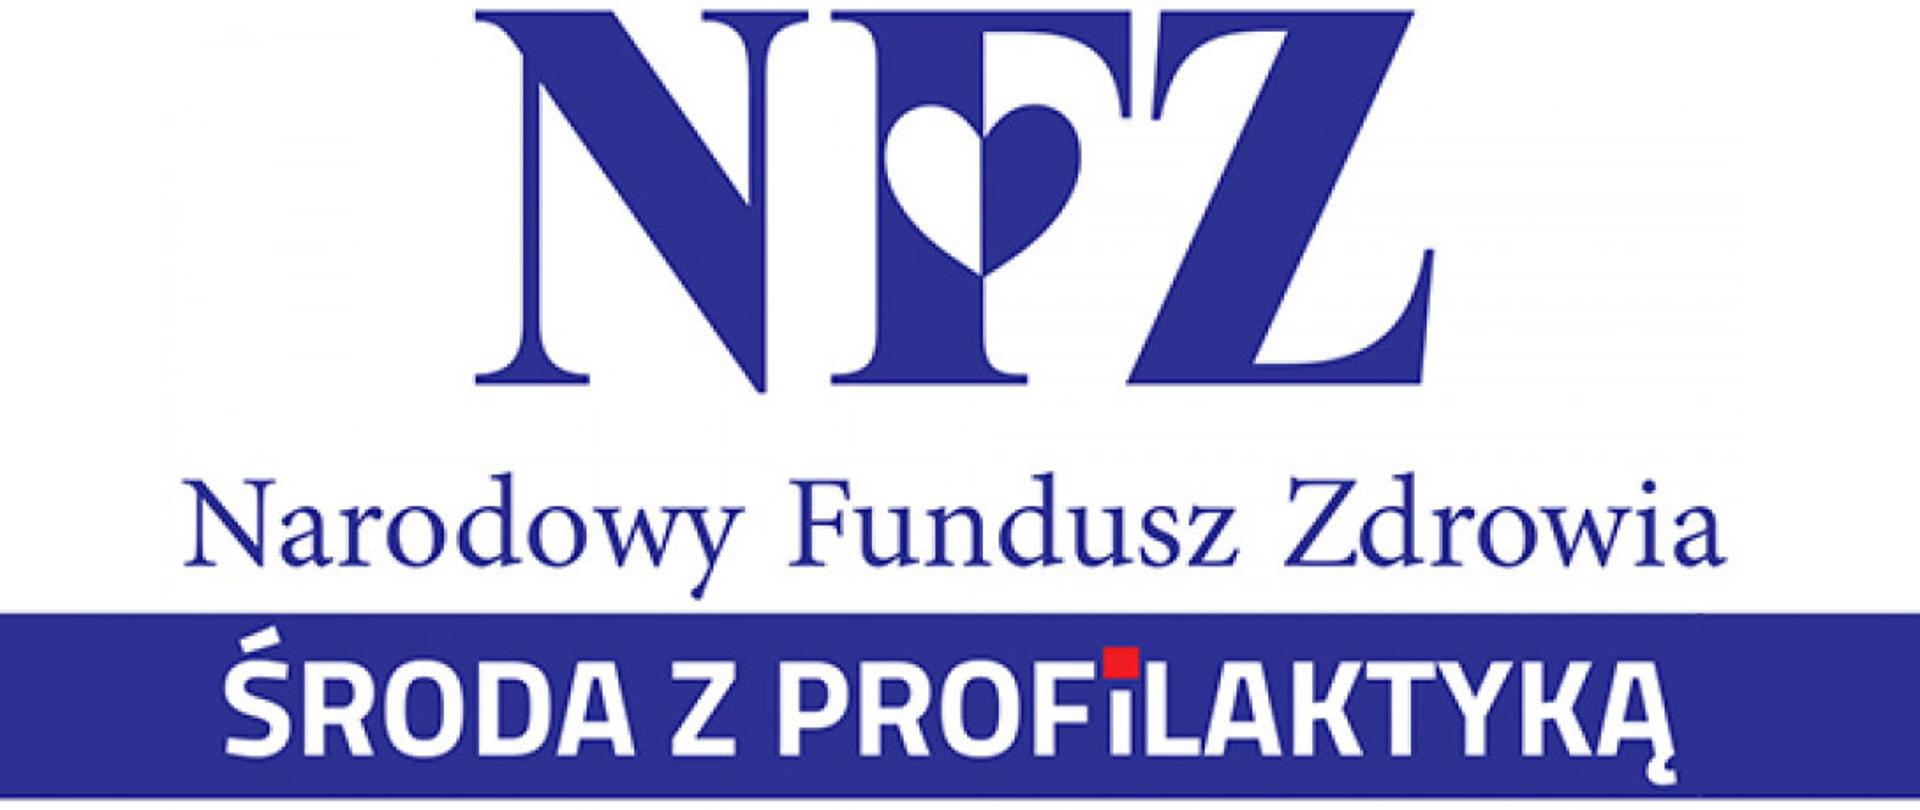 Na białym tle logotyp NFZ, poniżej niebieski napis na białym tle Narodowy Fundusz Zdrowia, biały napis na niebieskim tle Środa z profilaktyką